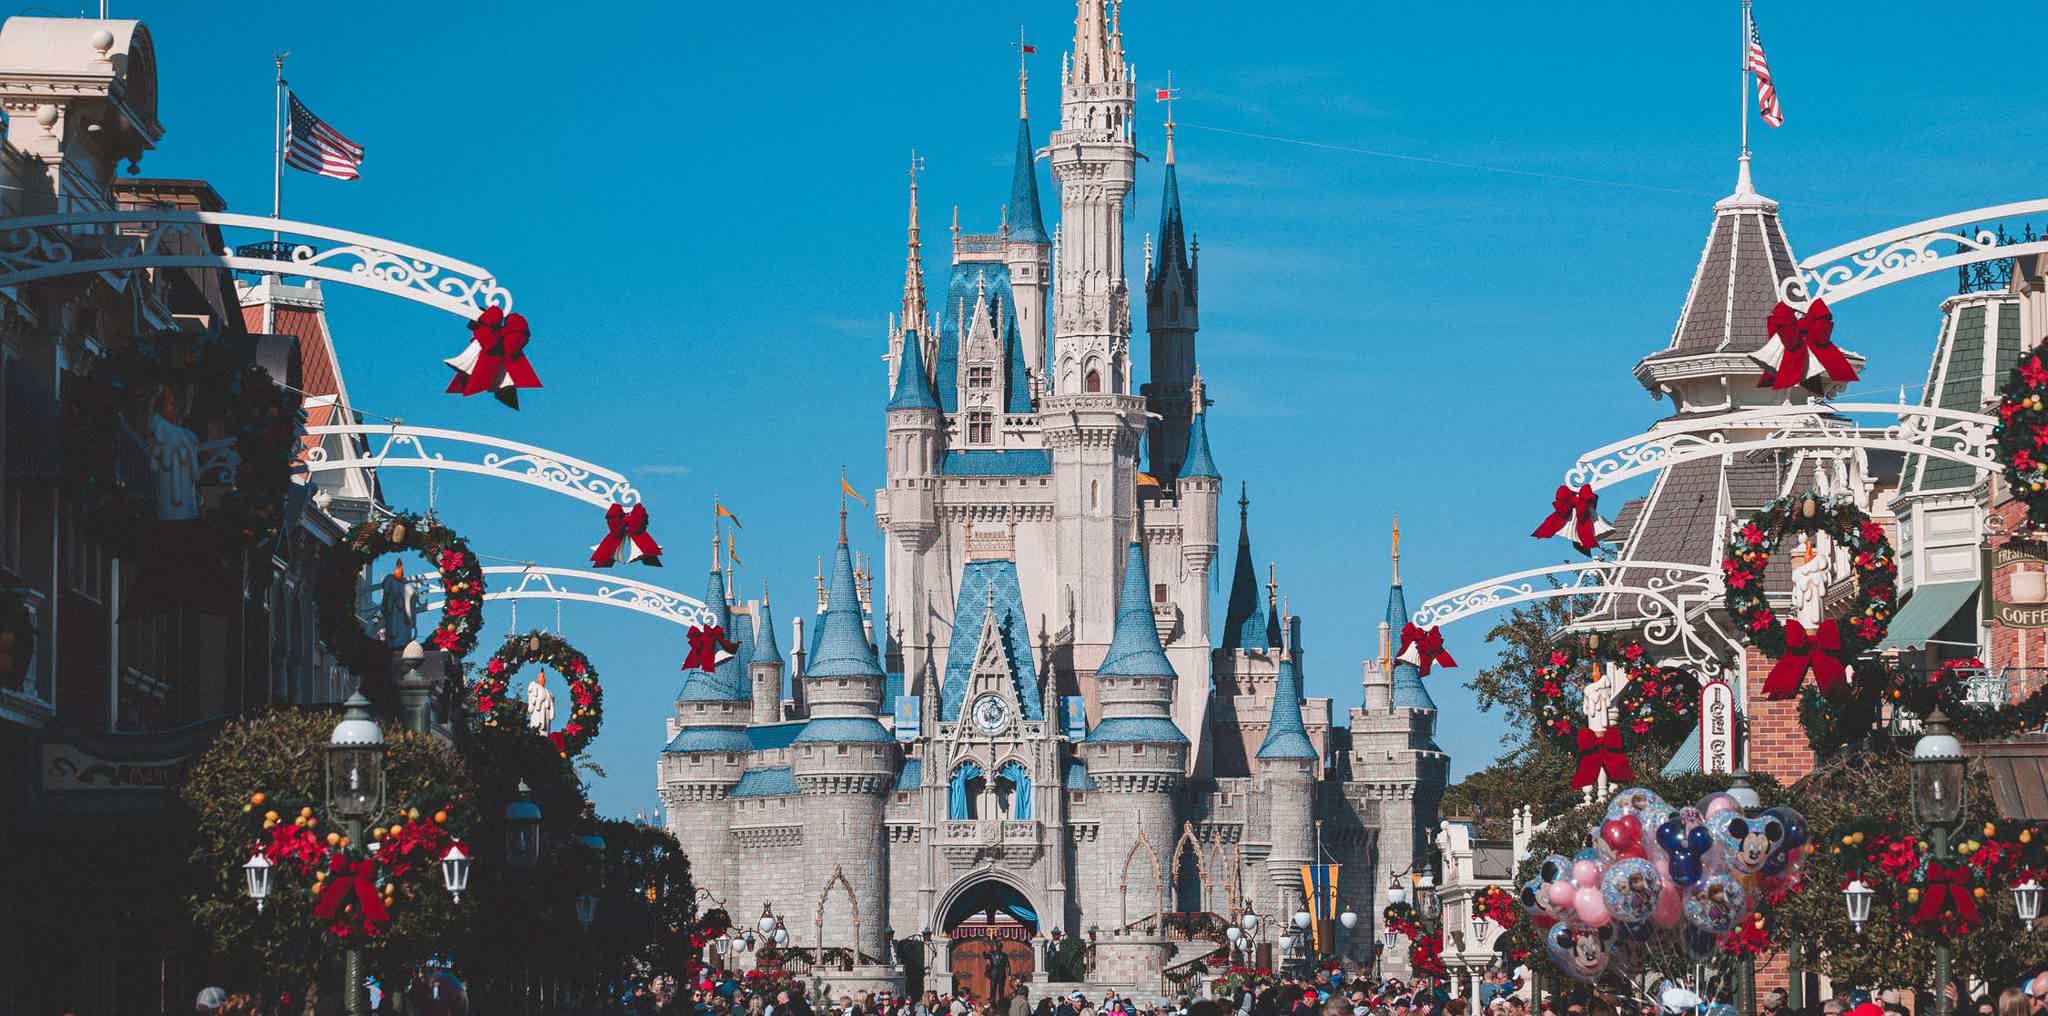 Veja os castelos que serviram de inspiração para os castelos da Disney. Fonte: Pexels.